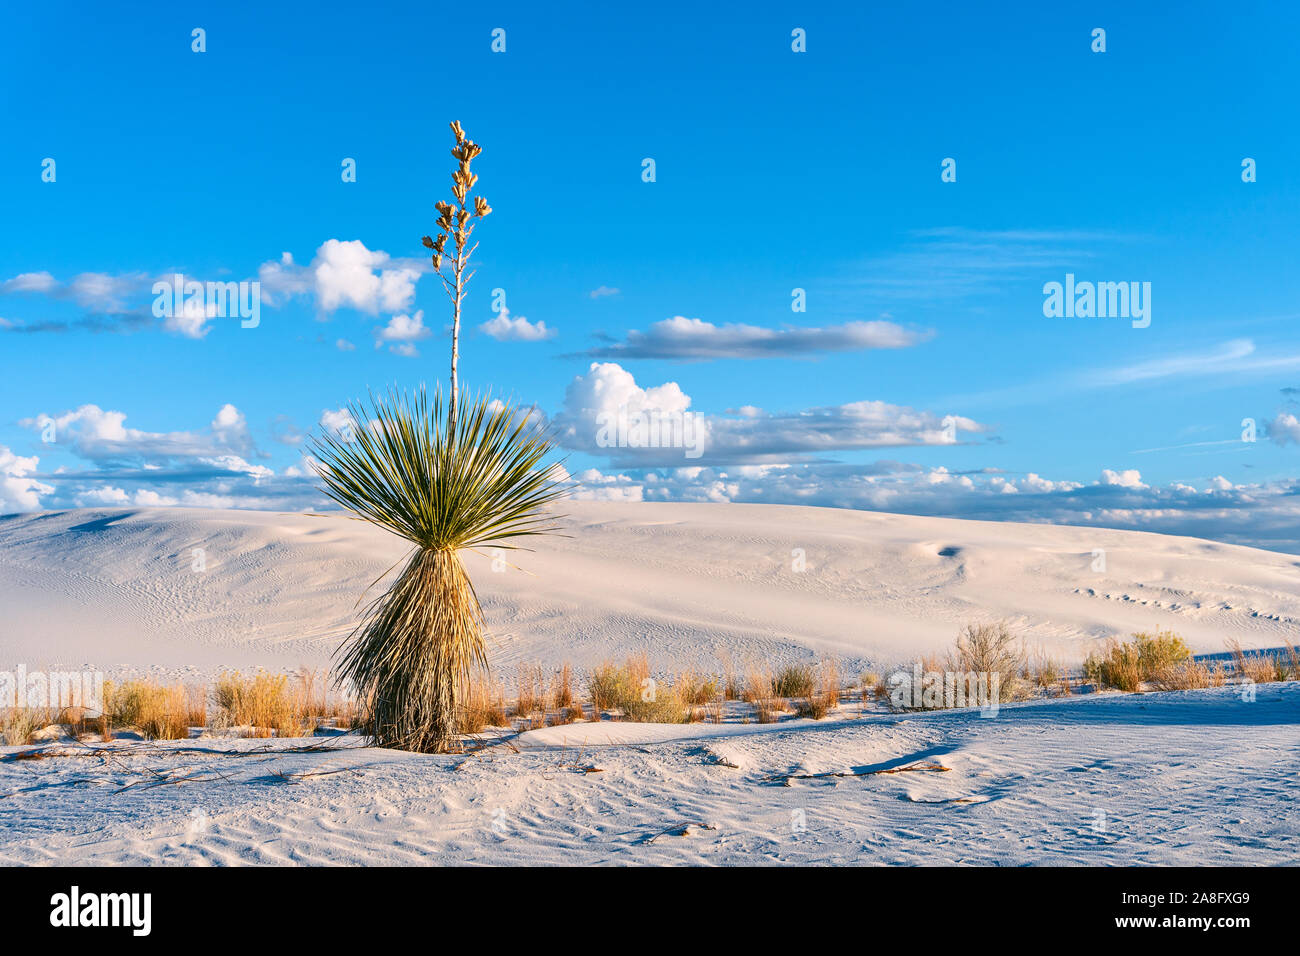 Paysage désertique pittoresque avec un yucca Soaptree contre les dunes de sable et le ciel bleu au parc national de White Sands, Nouveau-Mexique, États-Unis Banque D'Images